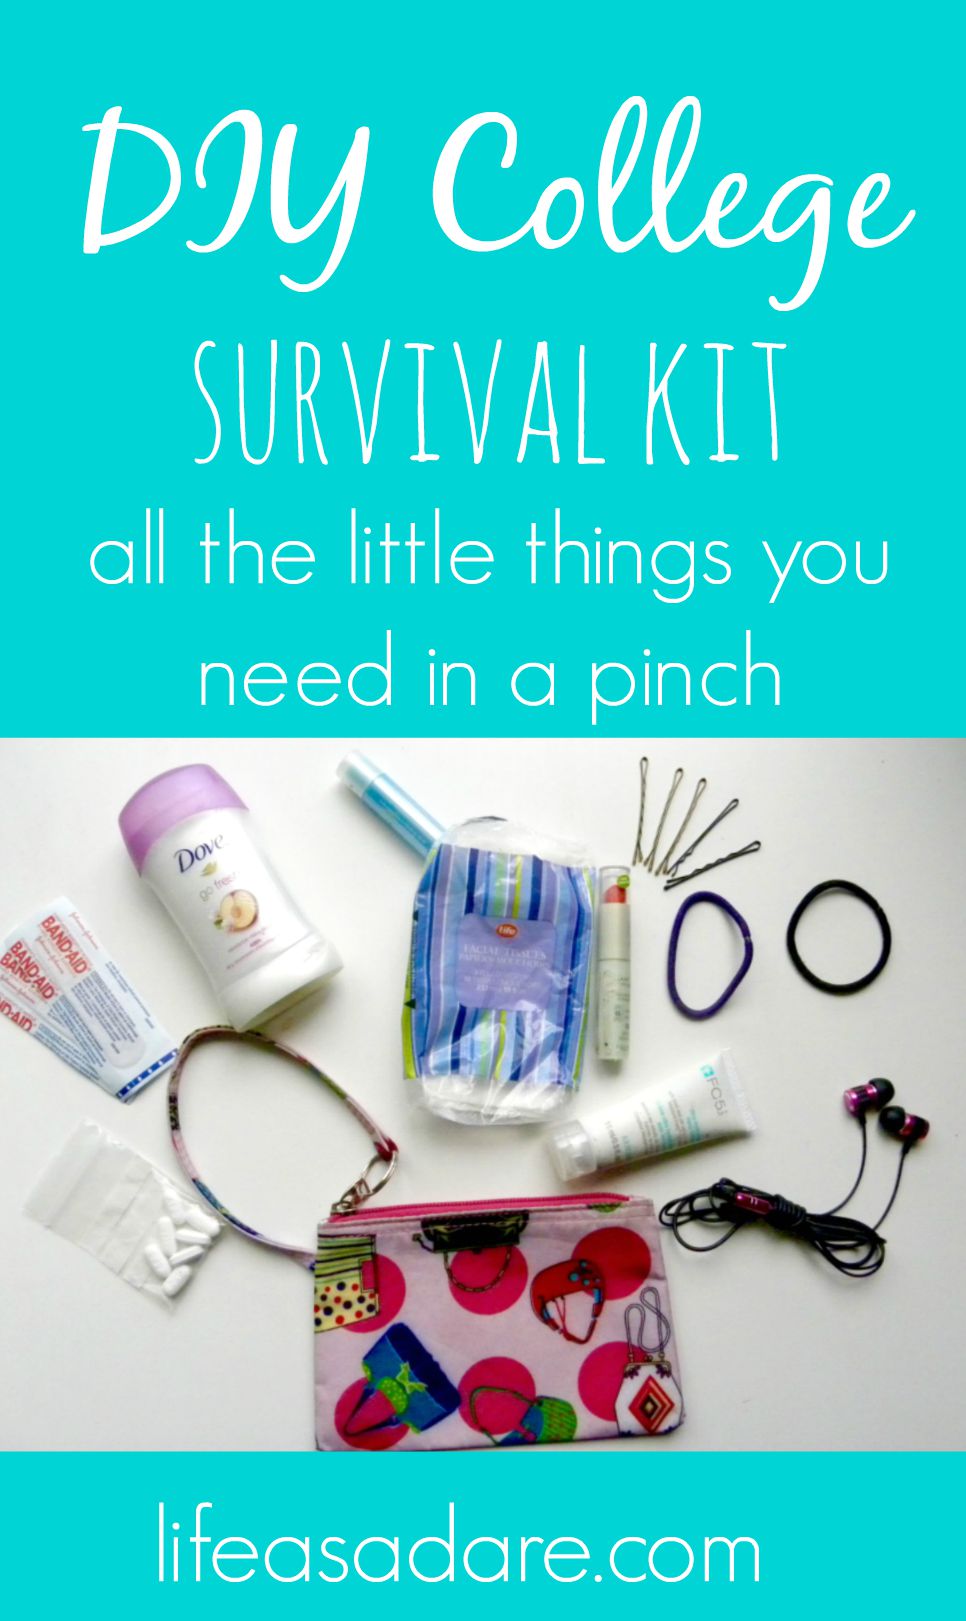 diy survival kit